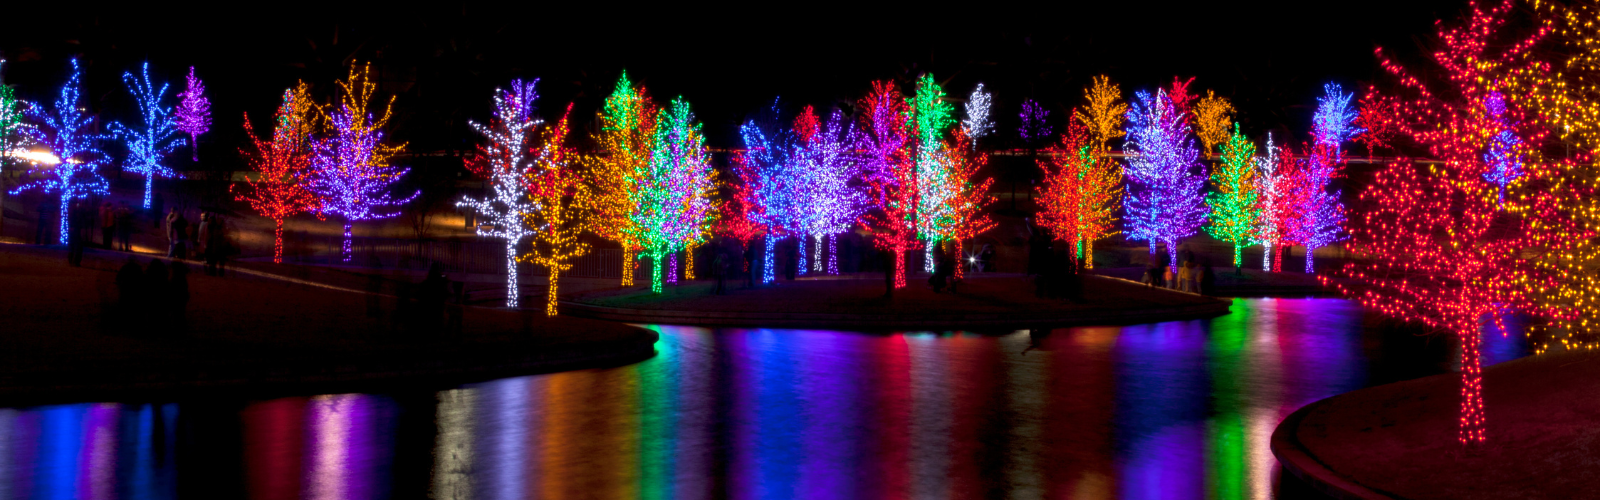 holiday Christmas led lights